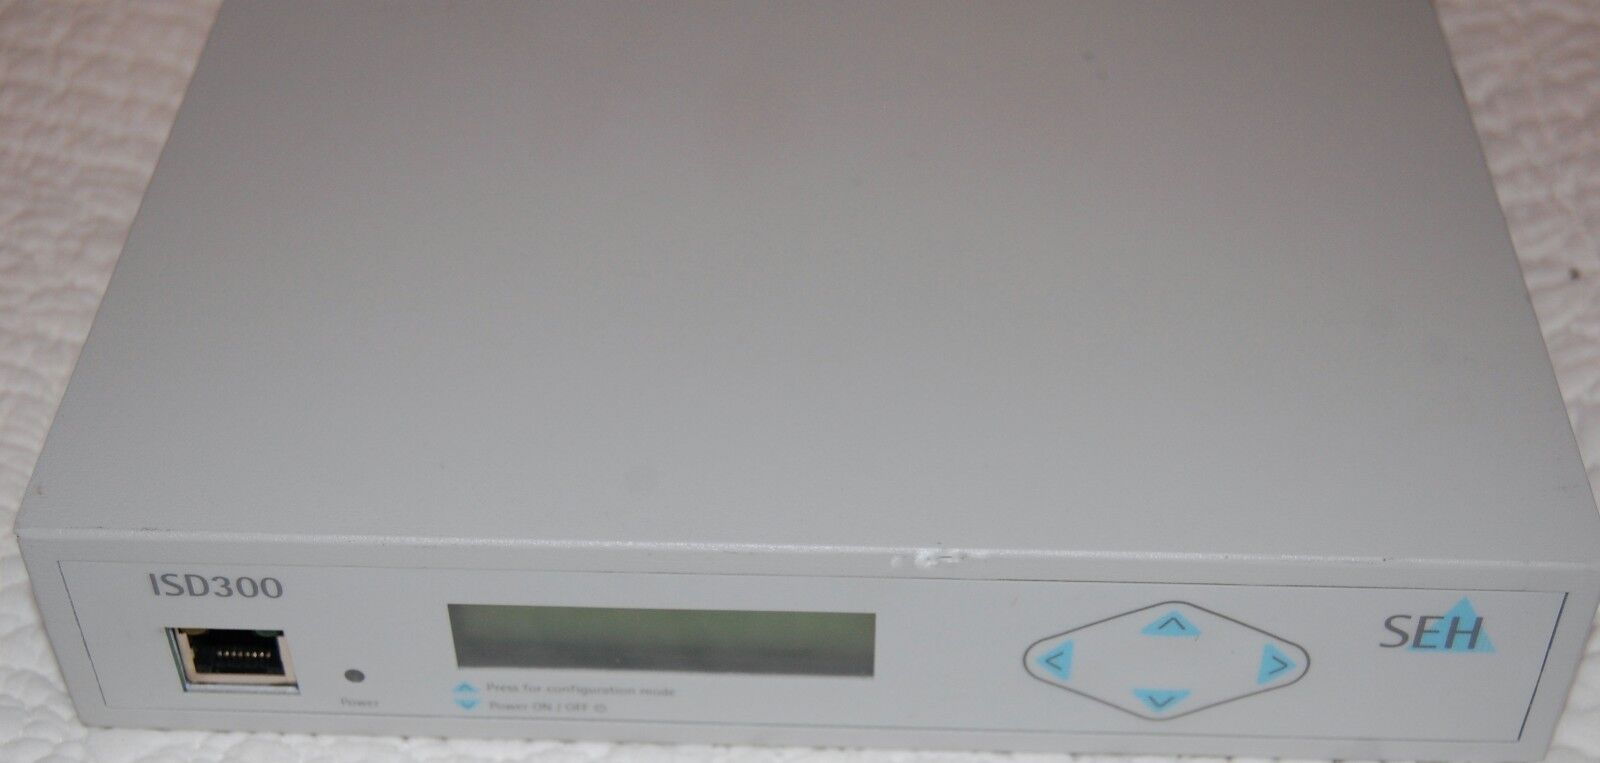 SEH TECHNOLOGY ISD300 Druckserver / Printserver 